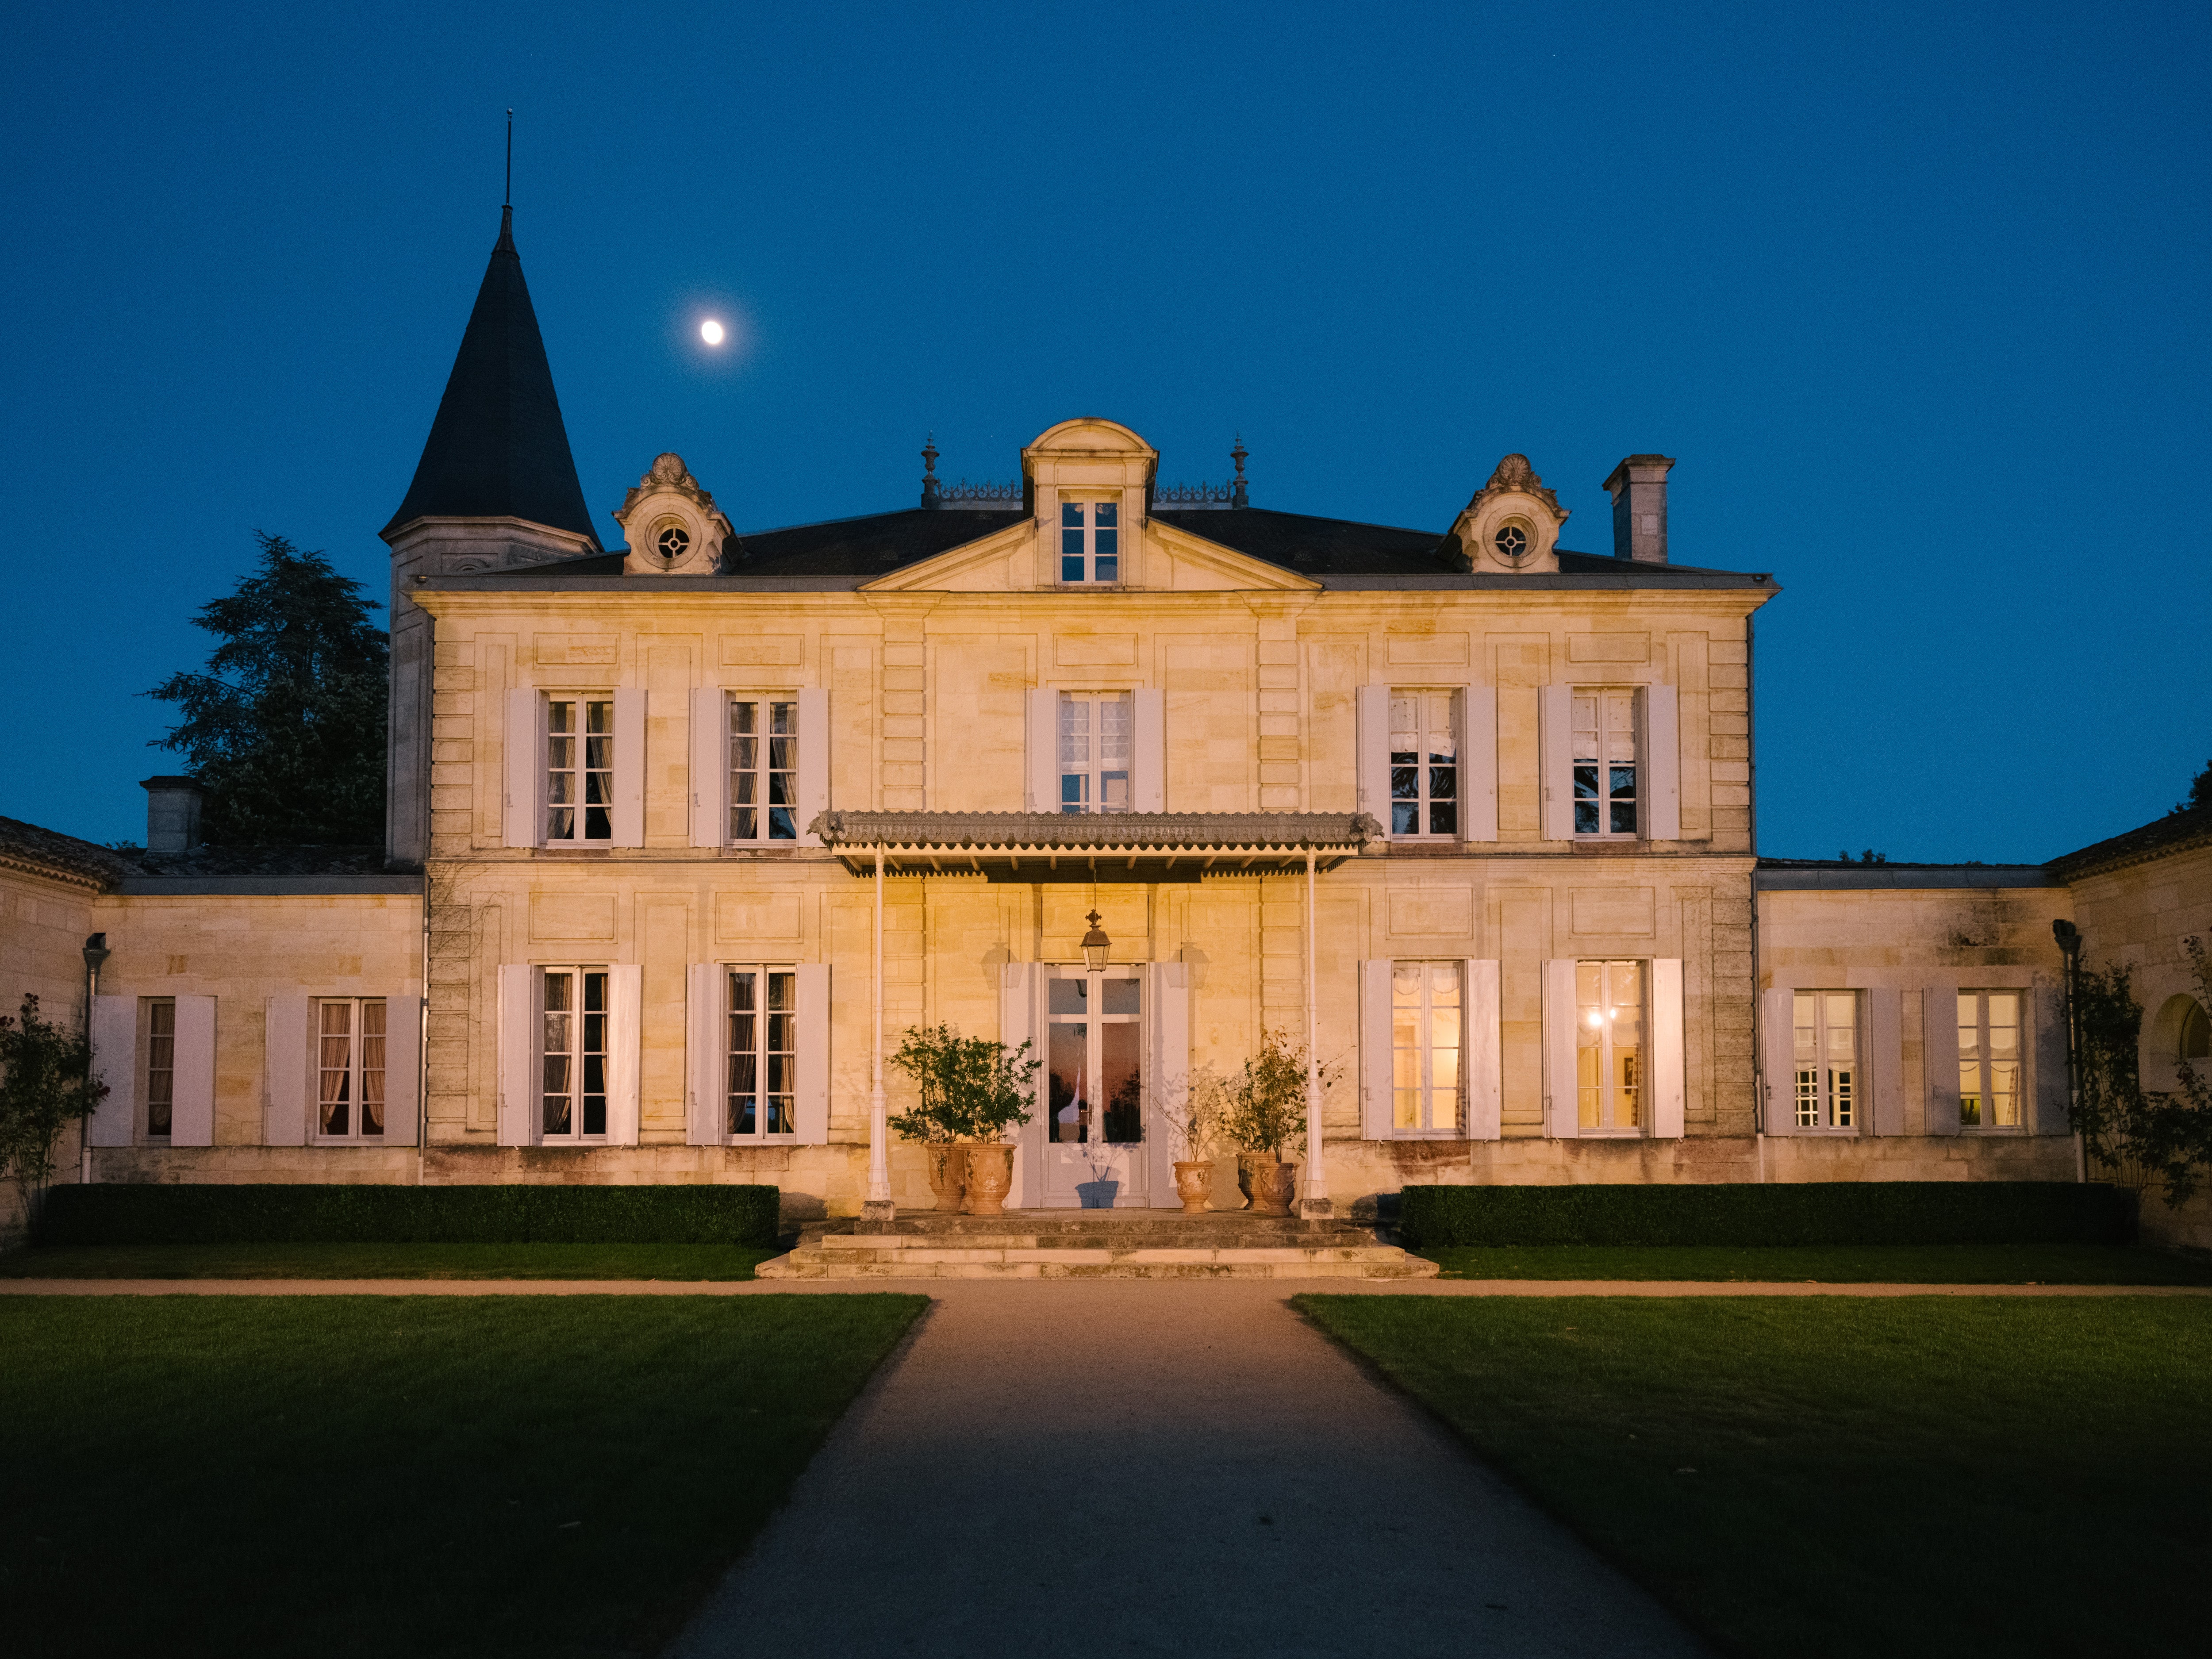 Château Cheval Blanc - Bordeaux Tradition - Négoce de Vins